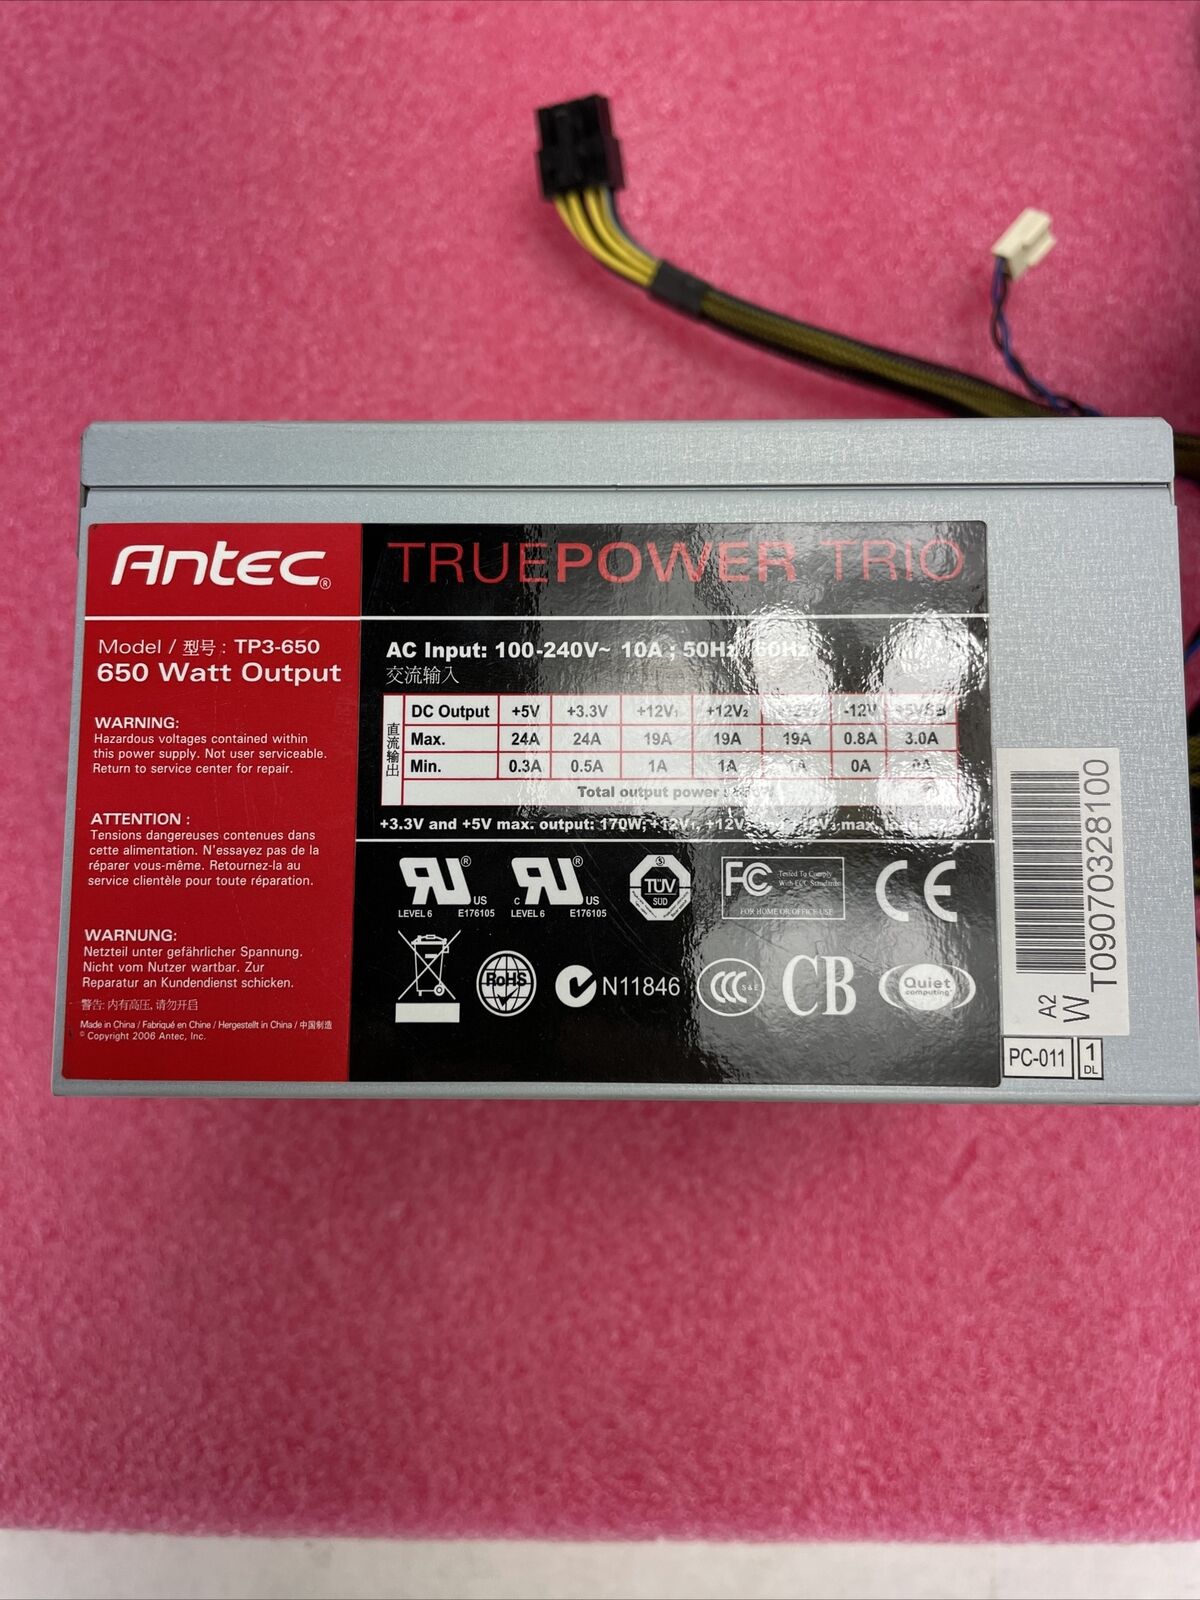 Antec TruePower Trio TP3-650 650W Power Supply